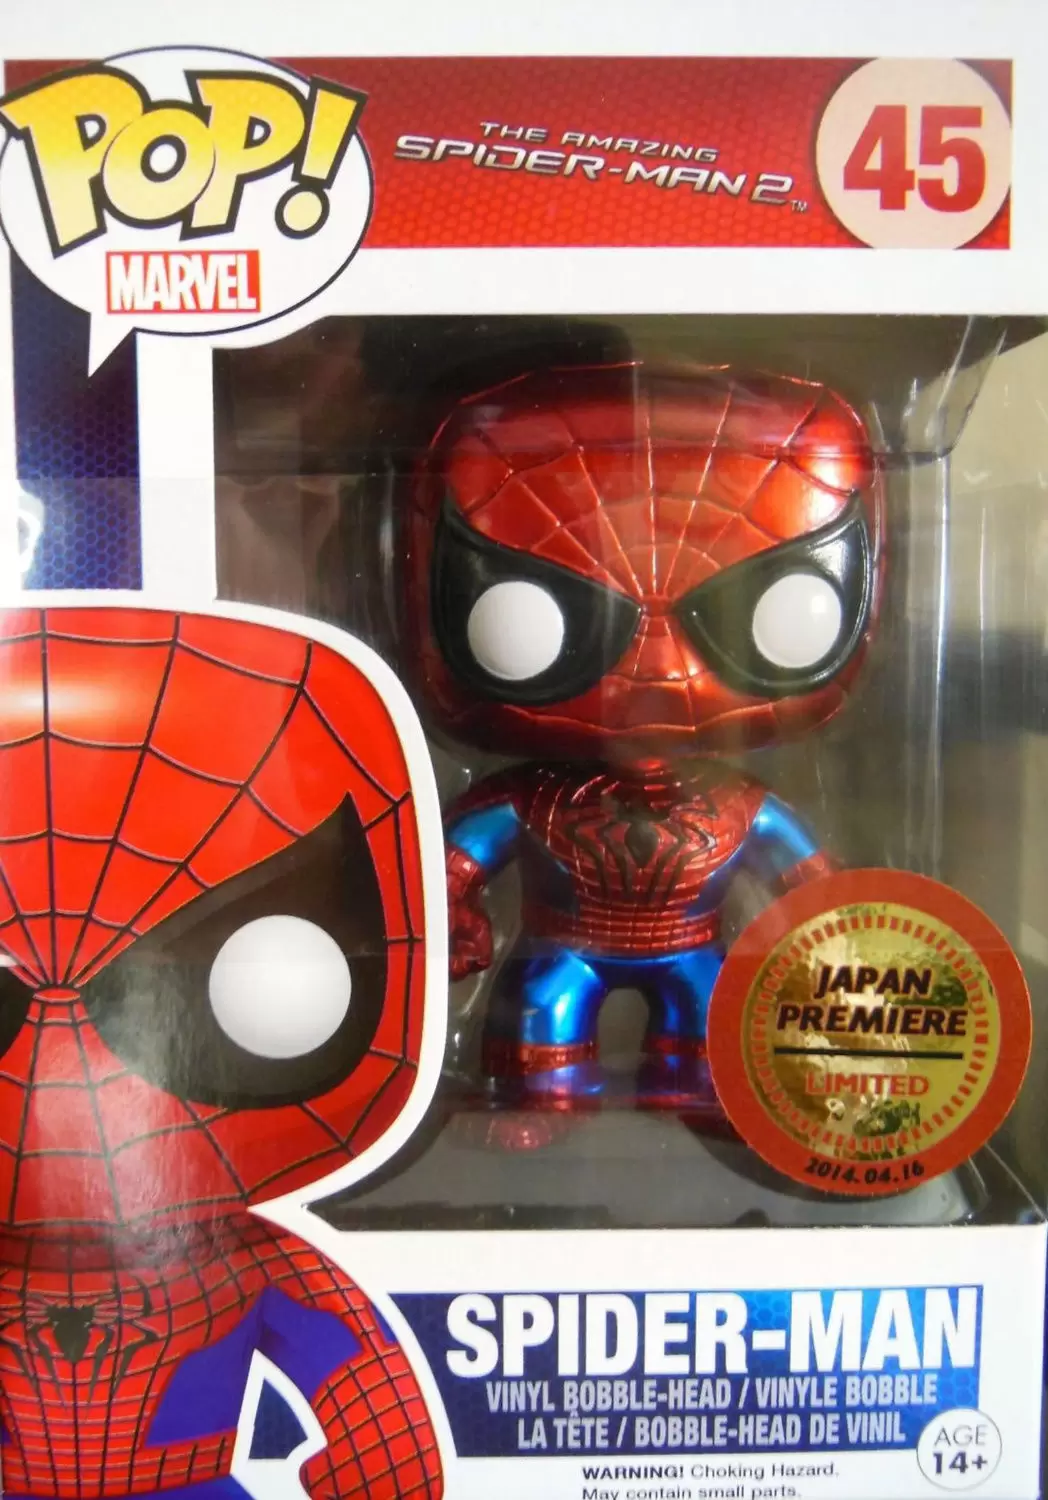 POP! MARVEL - The Amazing Spider-Man 2 - Spider-Man Metallic